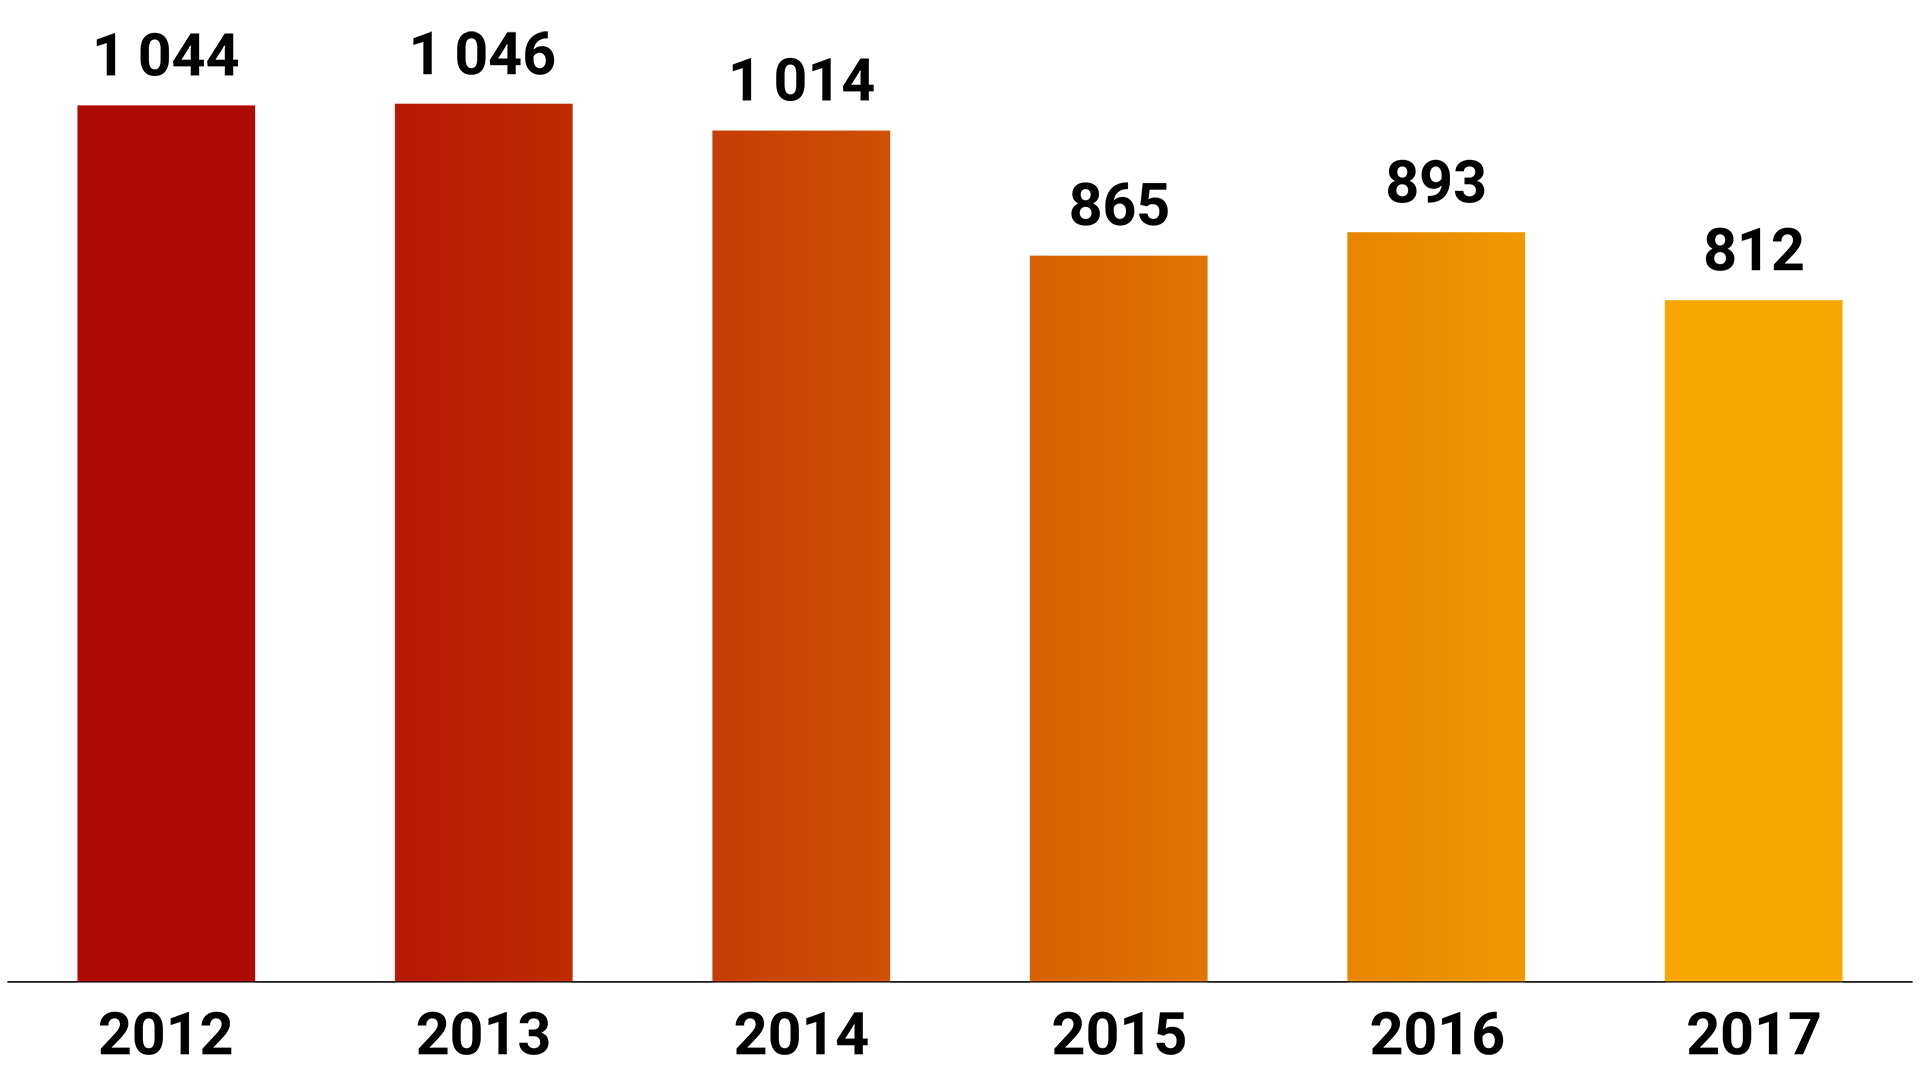 Antal trafikolyckor 2012-2017: 2012 1 044, 2013 1046, 2014 1 014, 2015 865, 2016 893, 2017 812.